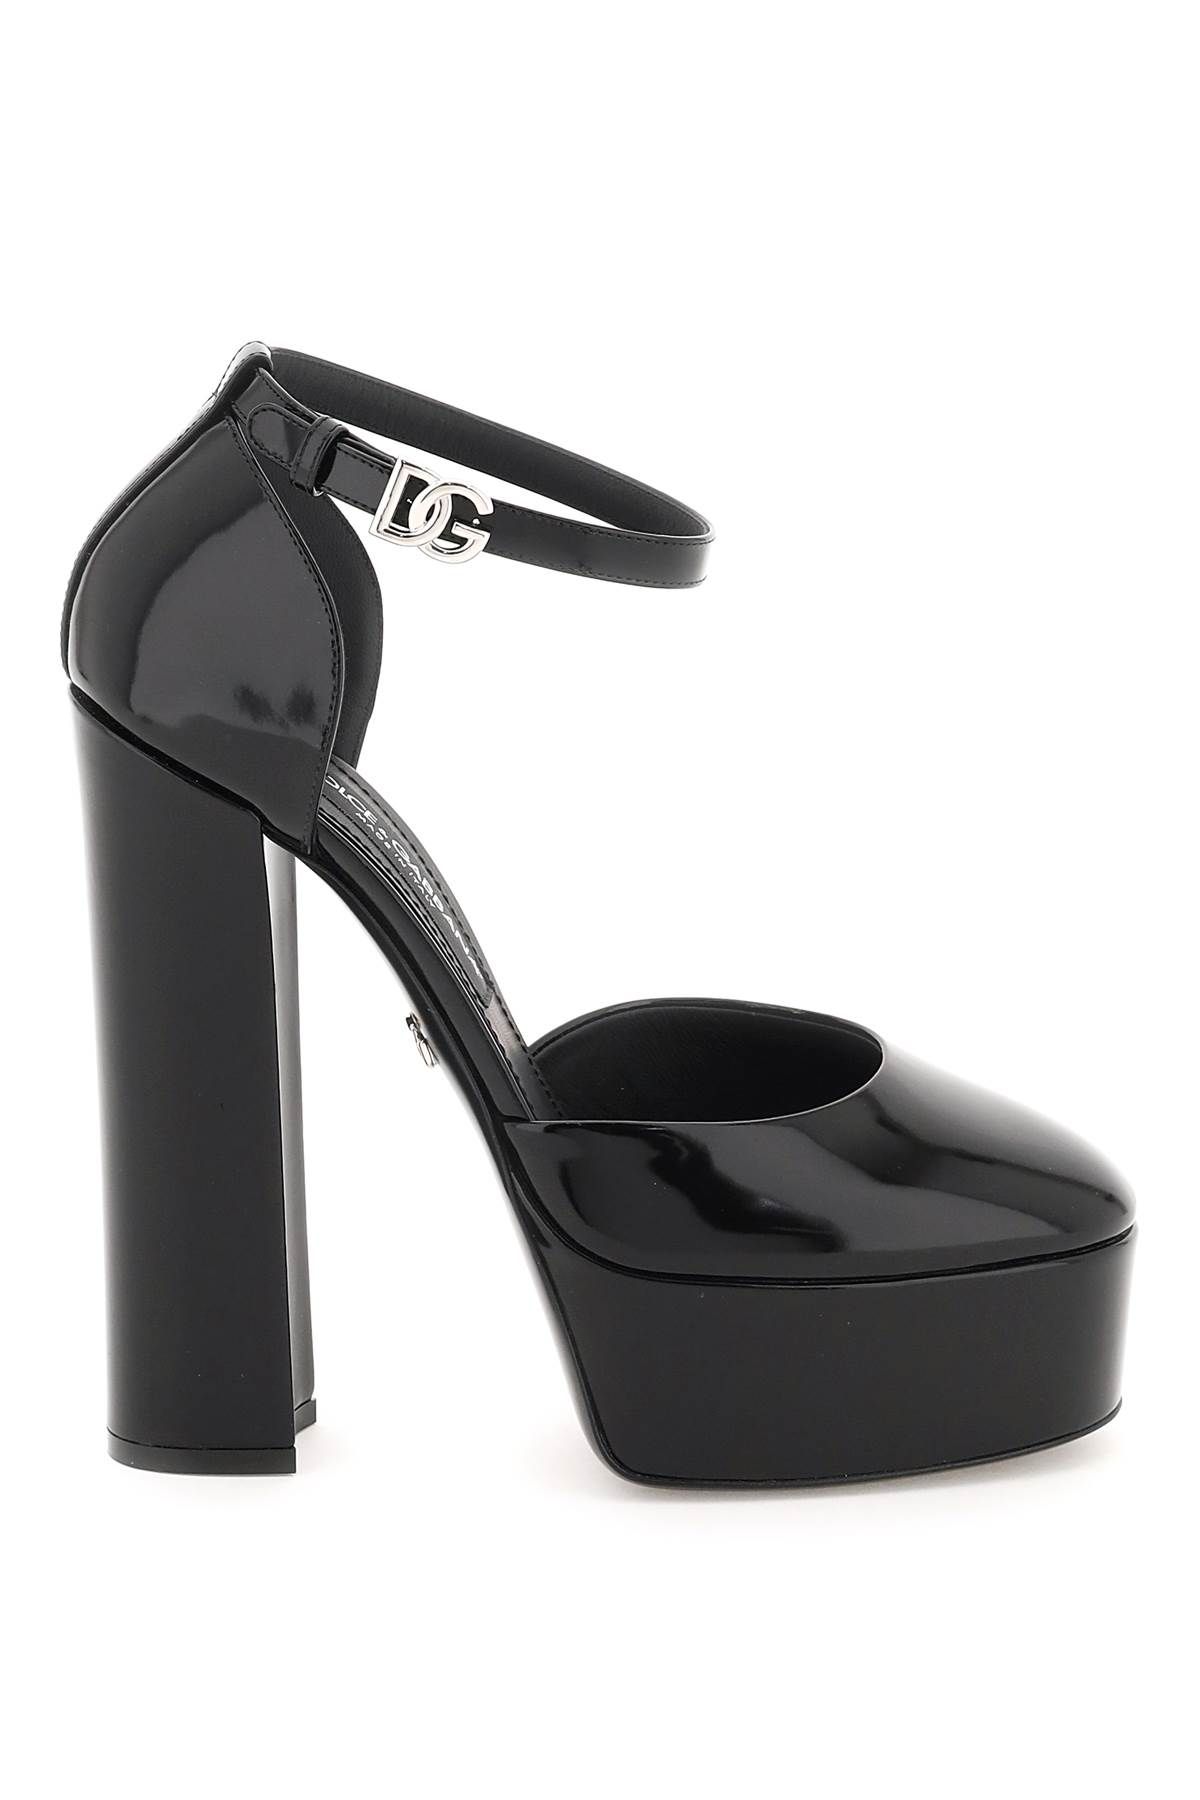 Dolce & Gabbana Polished Leather Platform Pumps In Black